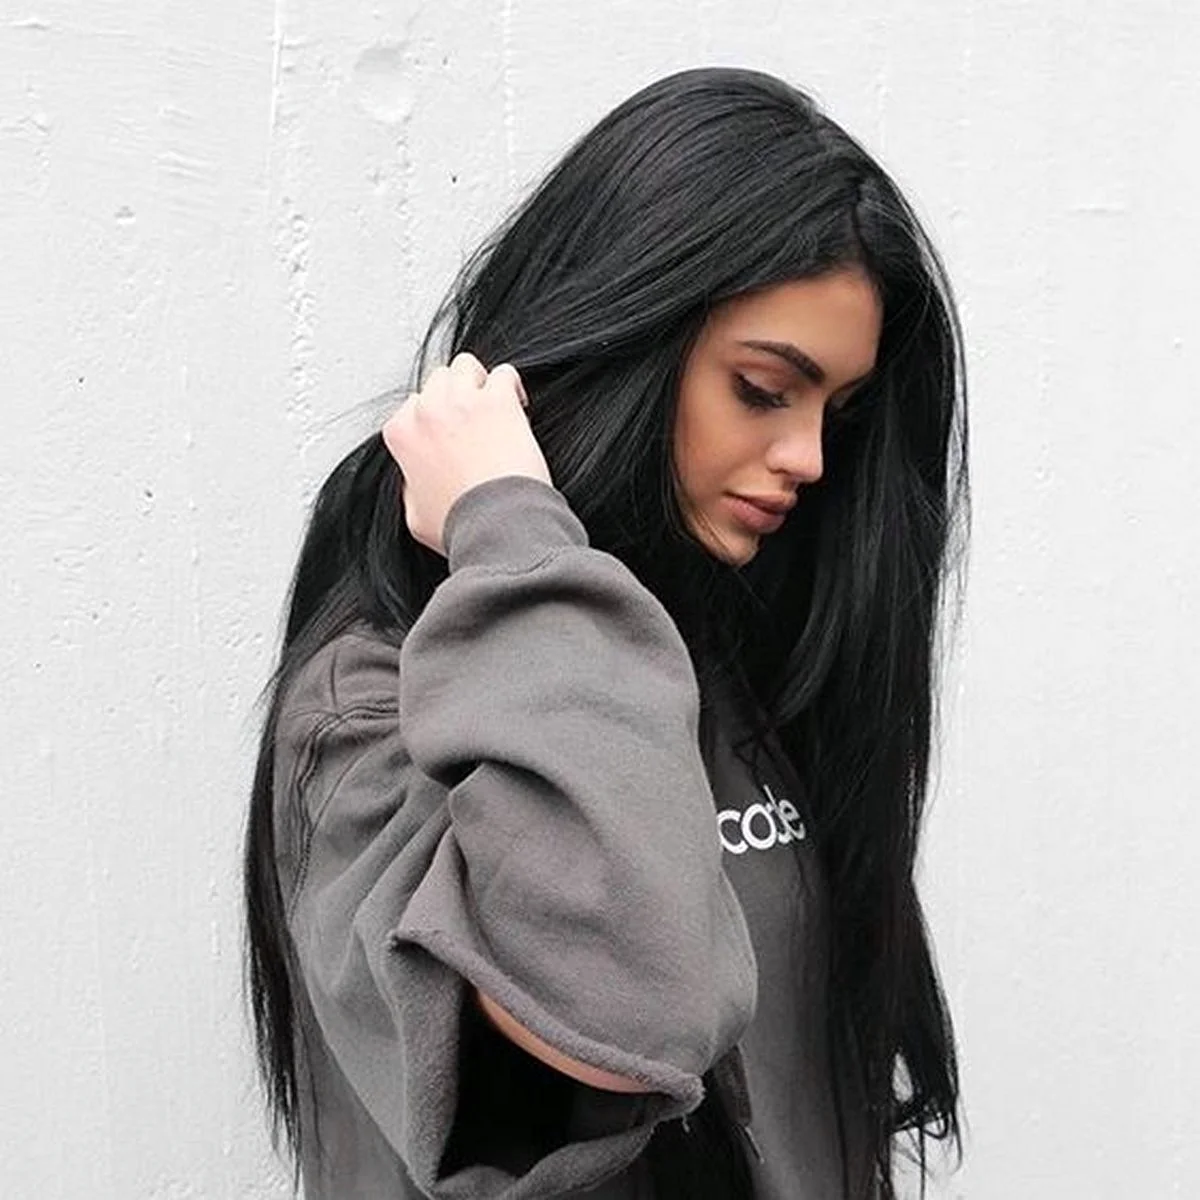 Фото Девушка черными волосами, более 98 качественных бесплатных стоковых фото